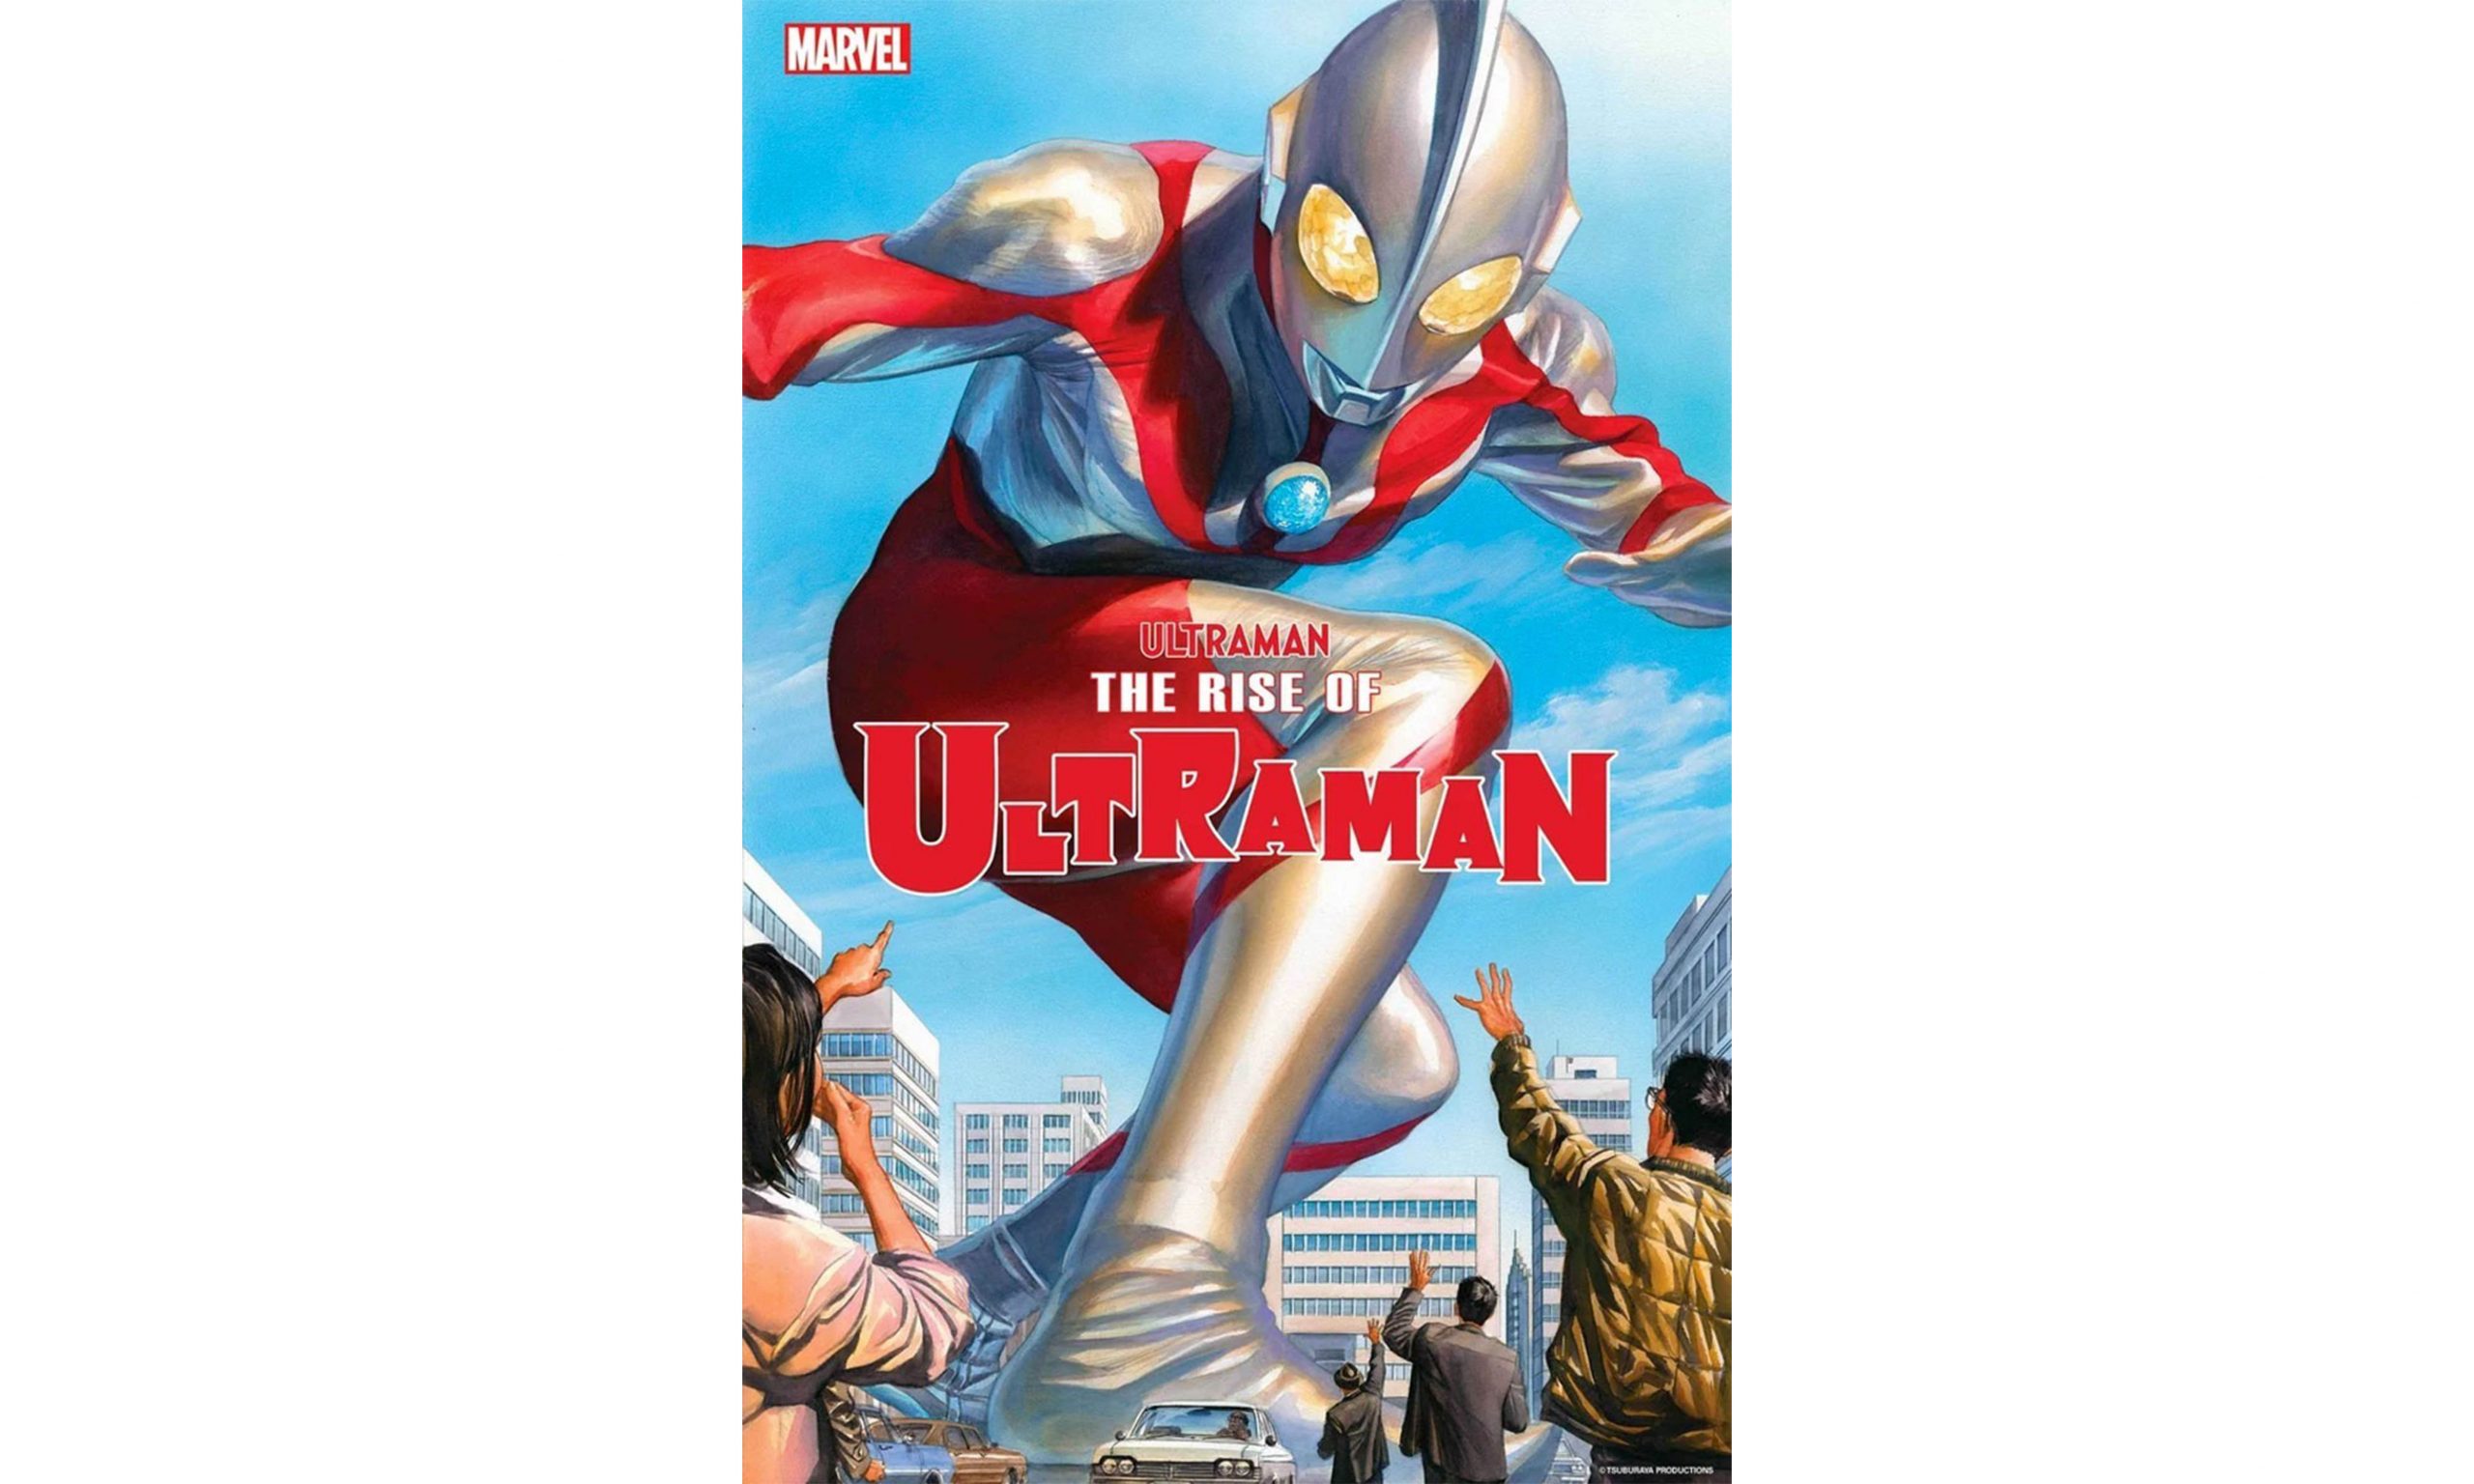 漫威公布《The Rise of Ultraman》第一期封面